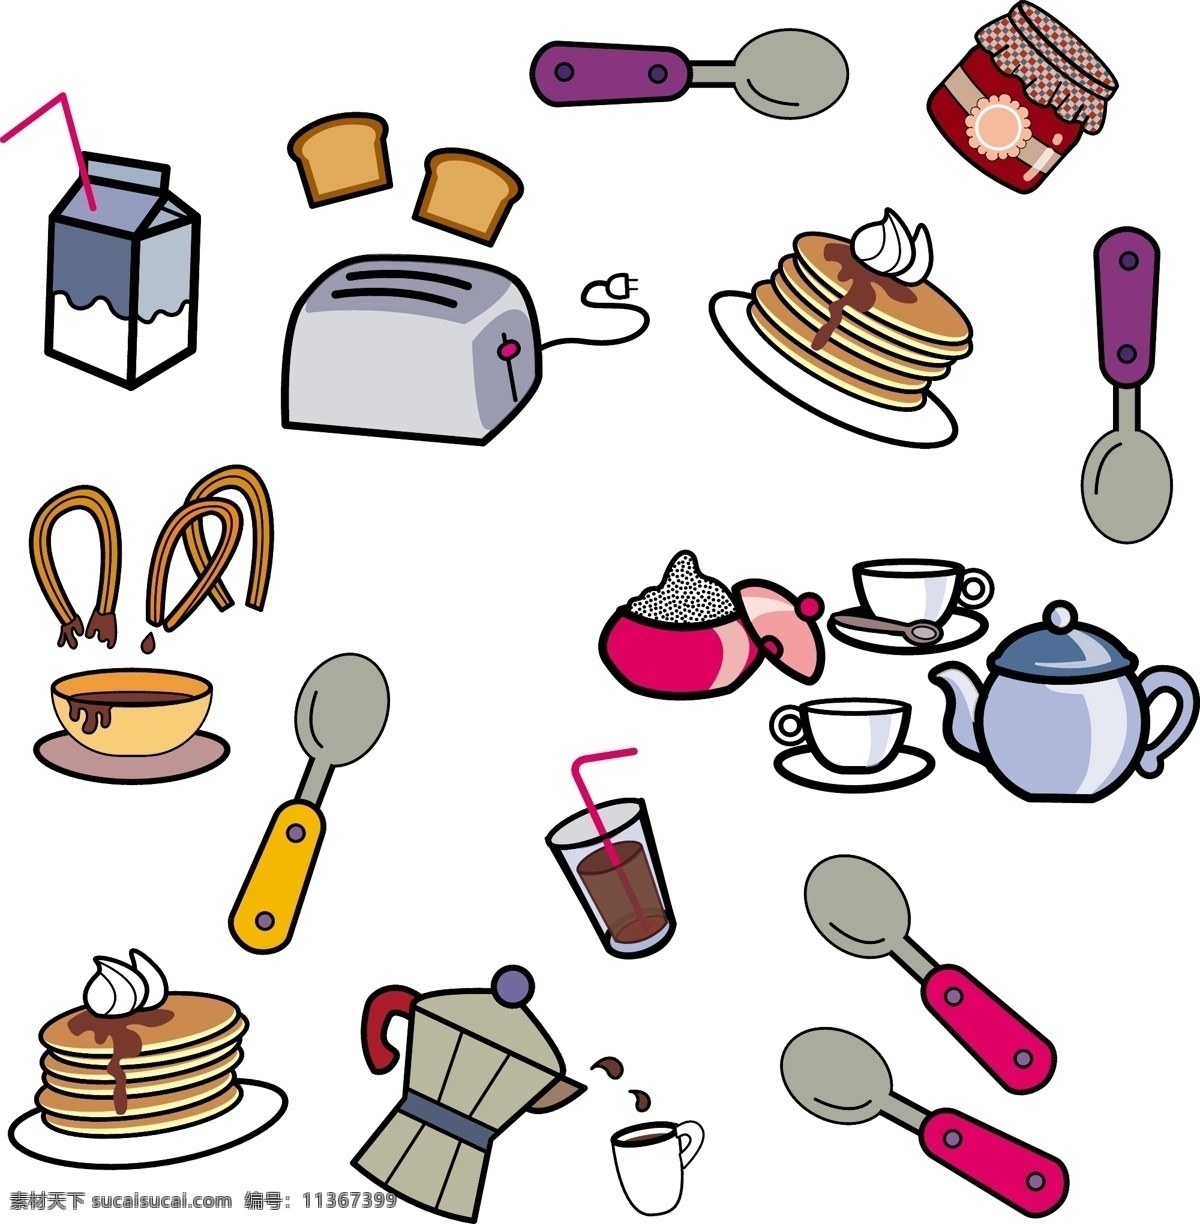 日用品合集 食物 日用品 牛奶 茶 勺子 甜点 糕点 矢量 原创 卡通 原创卡通素材 生活百科 生活用品